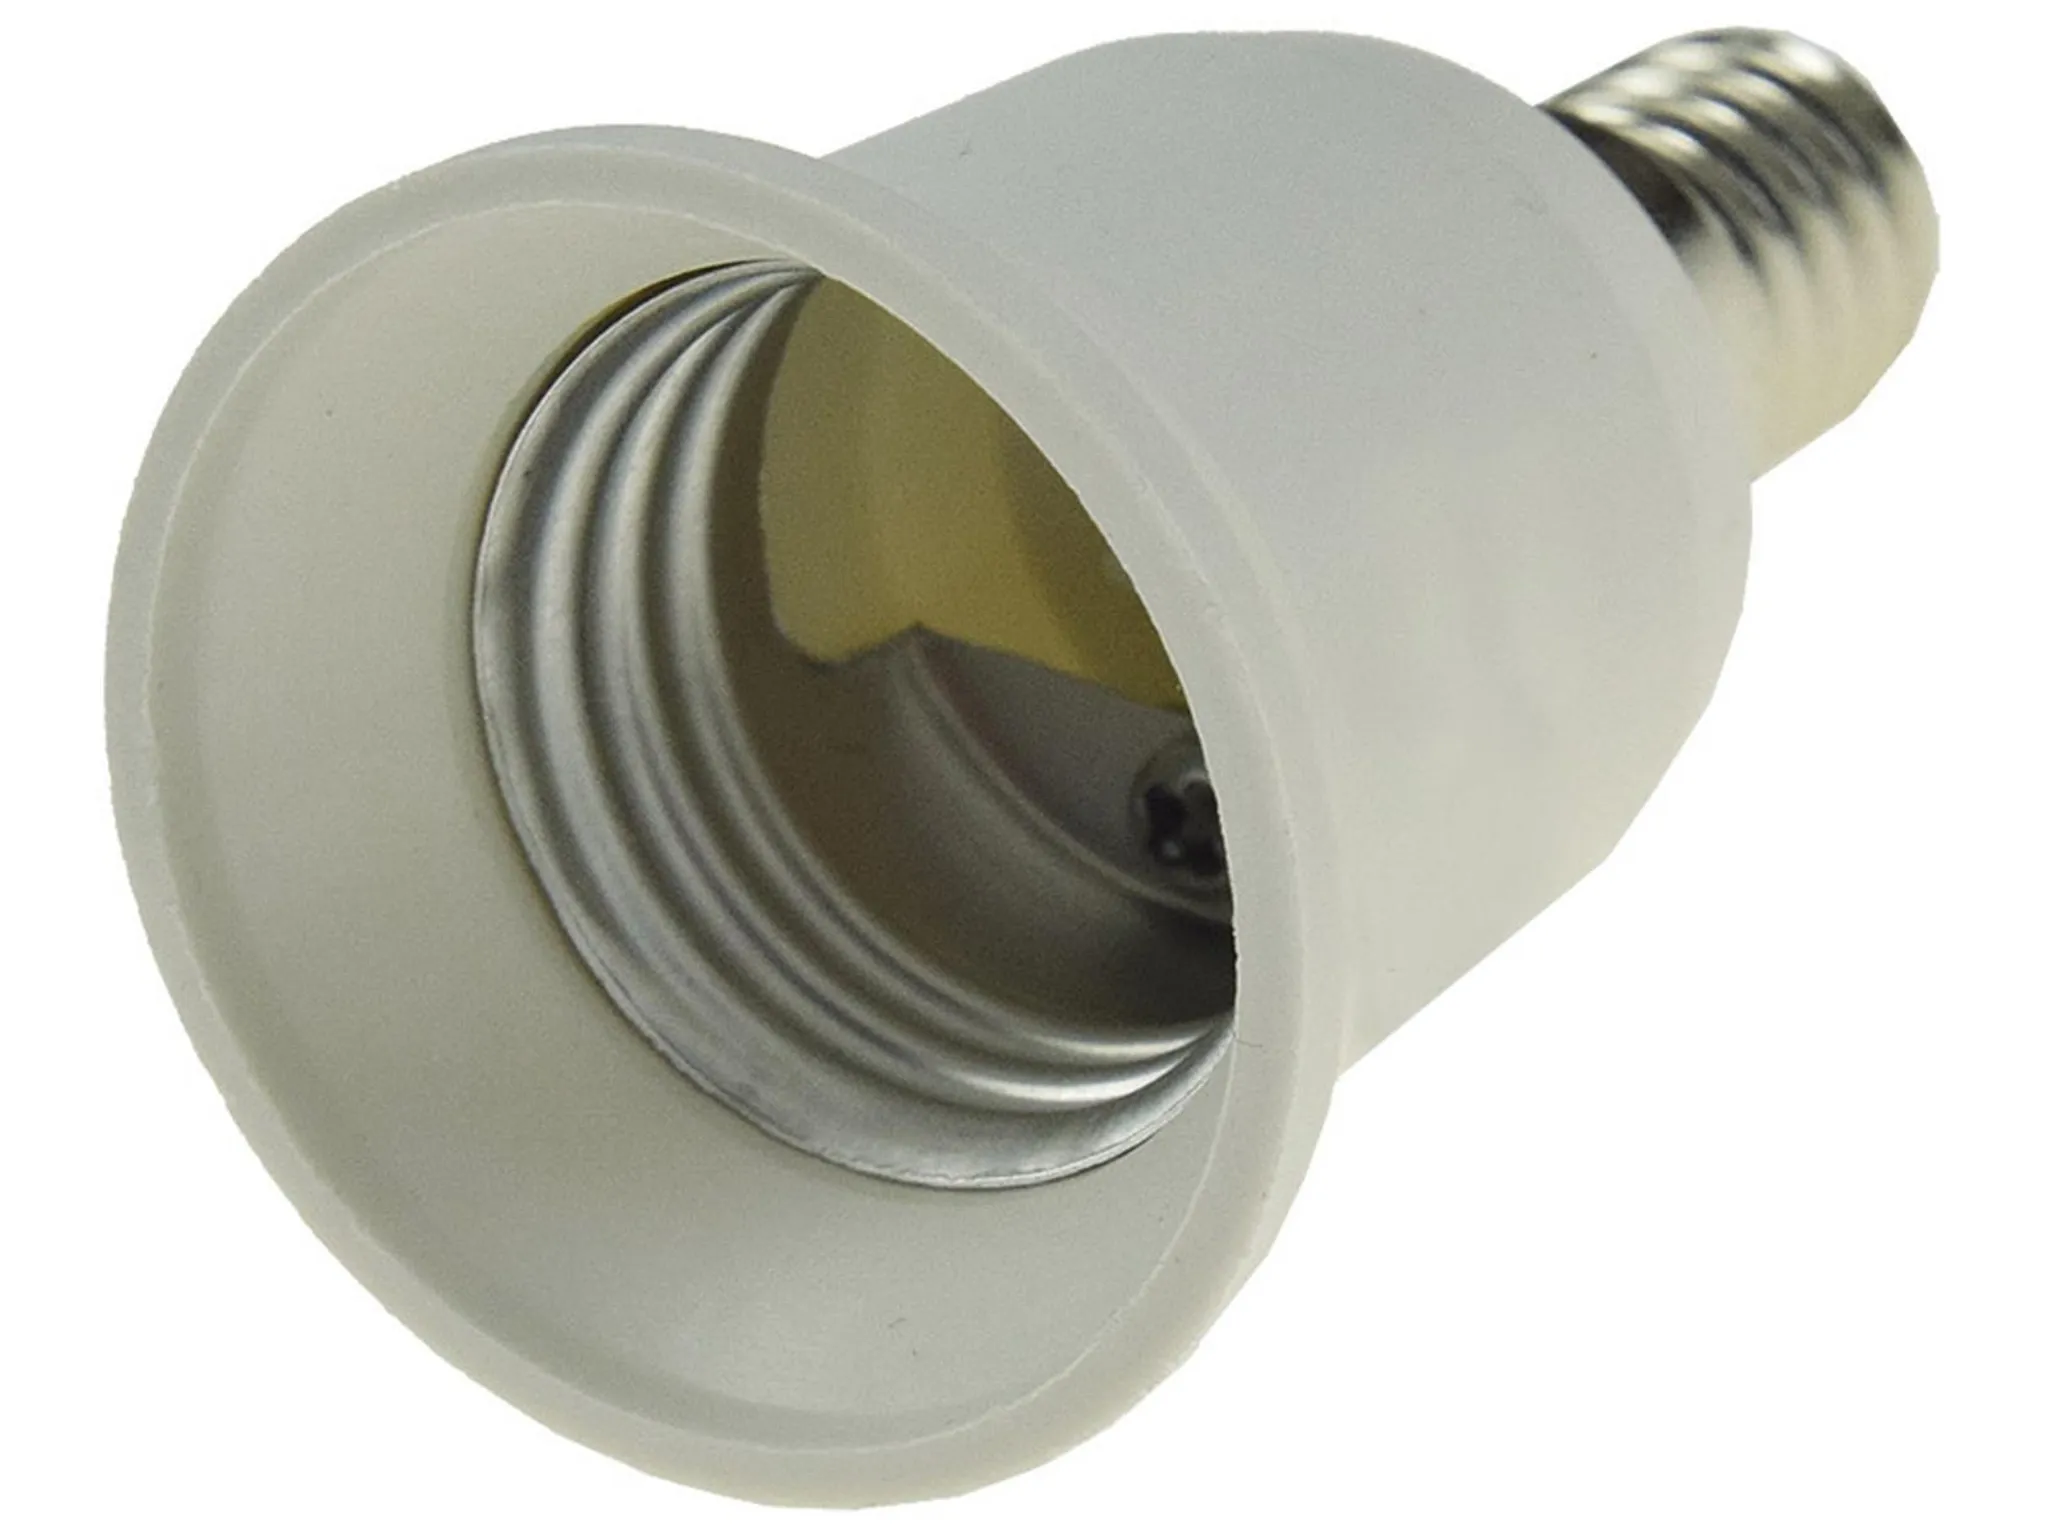 Adapter für Lampenfassung E14 auf E27